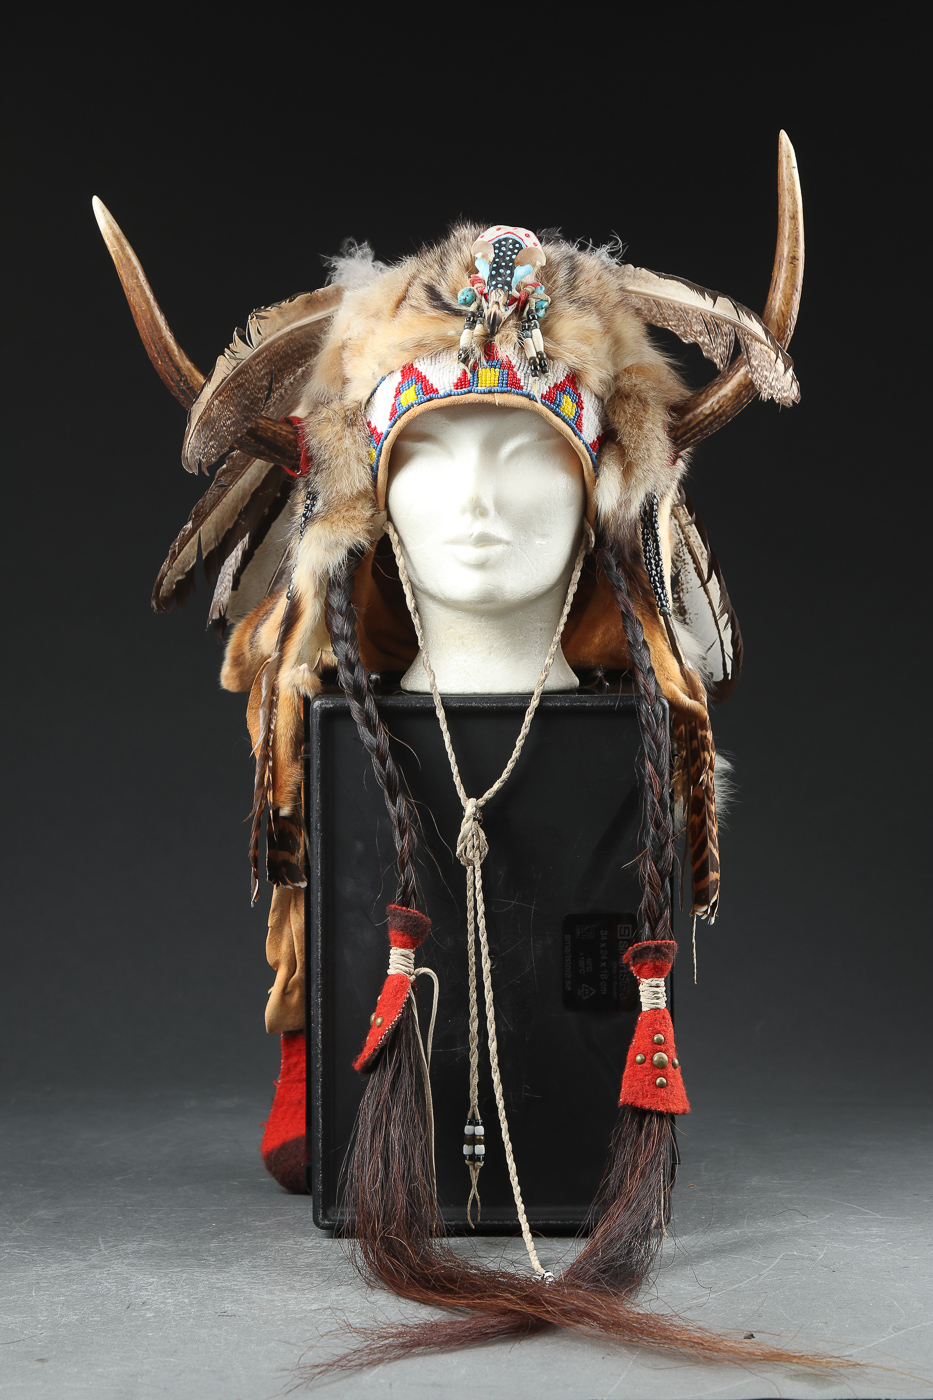 kontakt malt ihærdige Ceremonielt høvding Indianer hat,1900-tallet anden halvdel | Lauritz.com